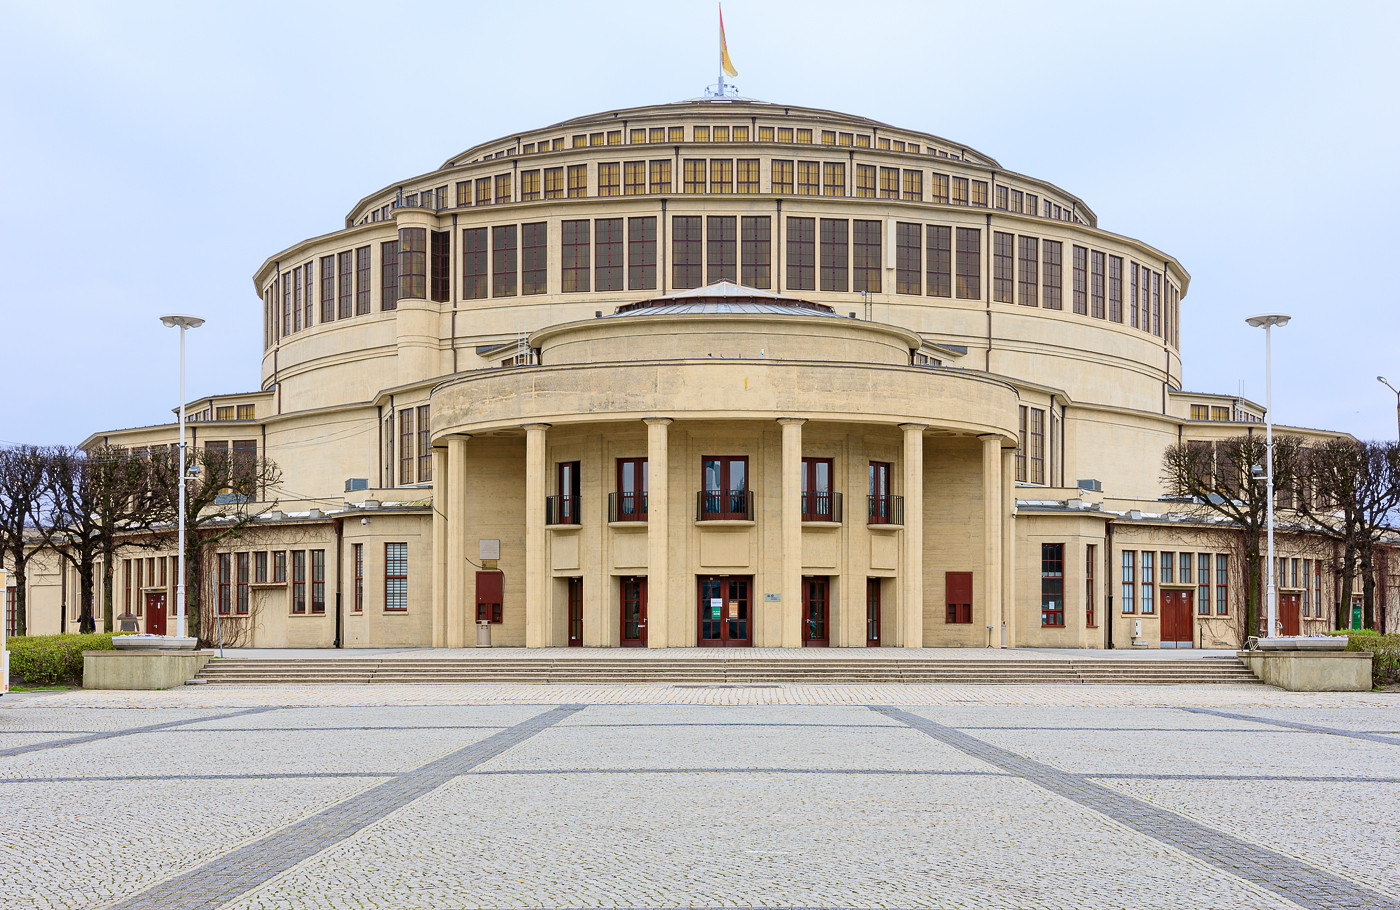 Centennial Hall | Wrocław Sightseeing | Wroclaw